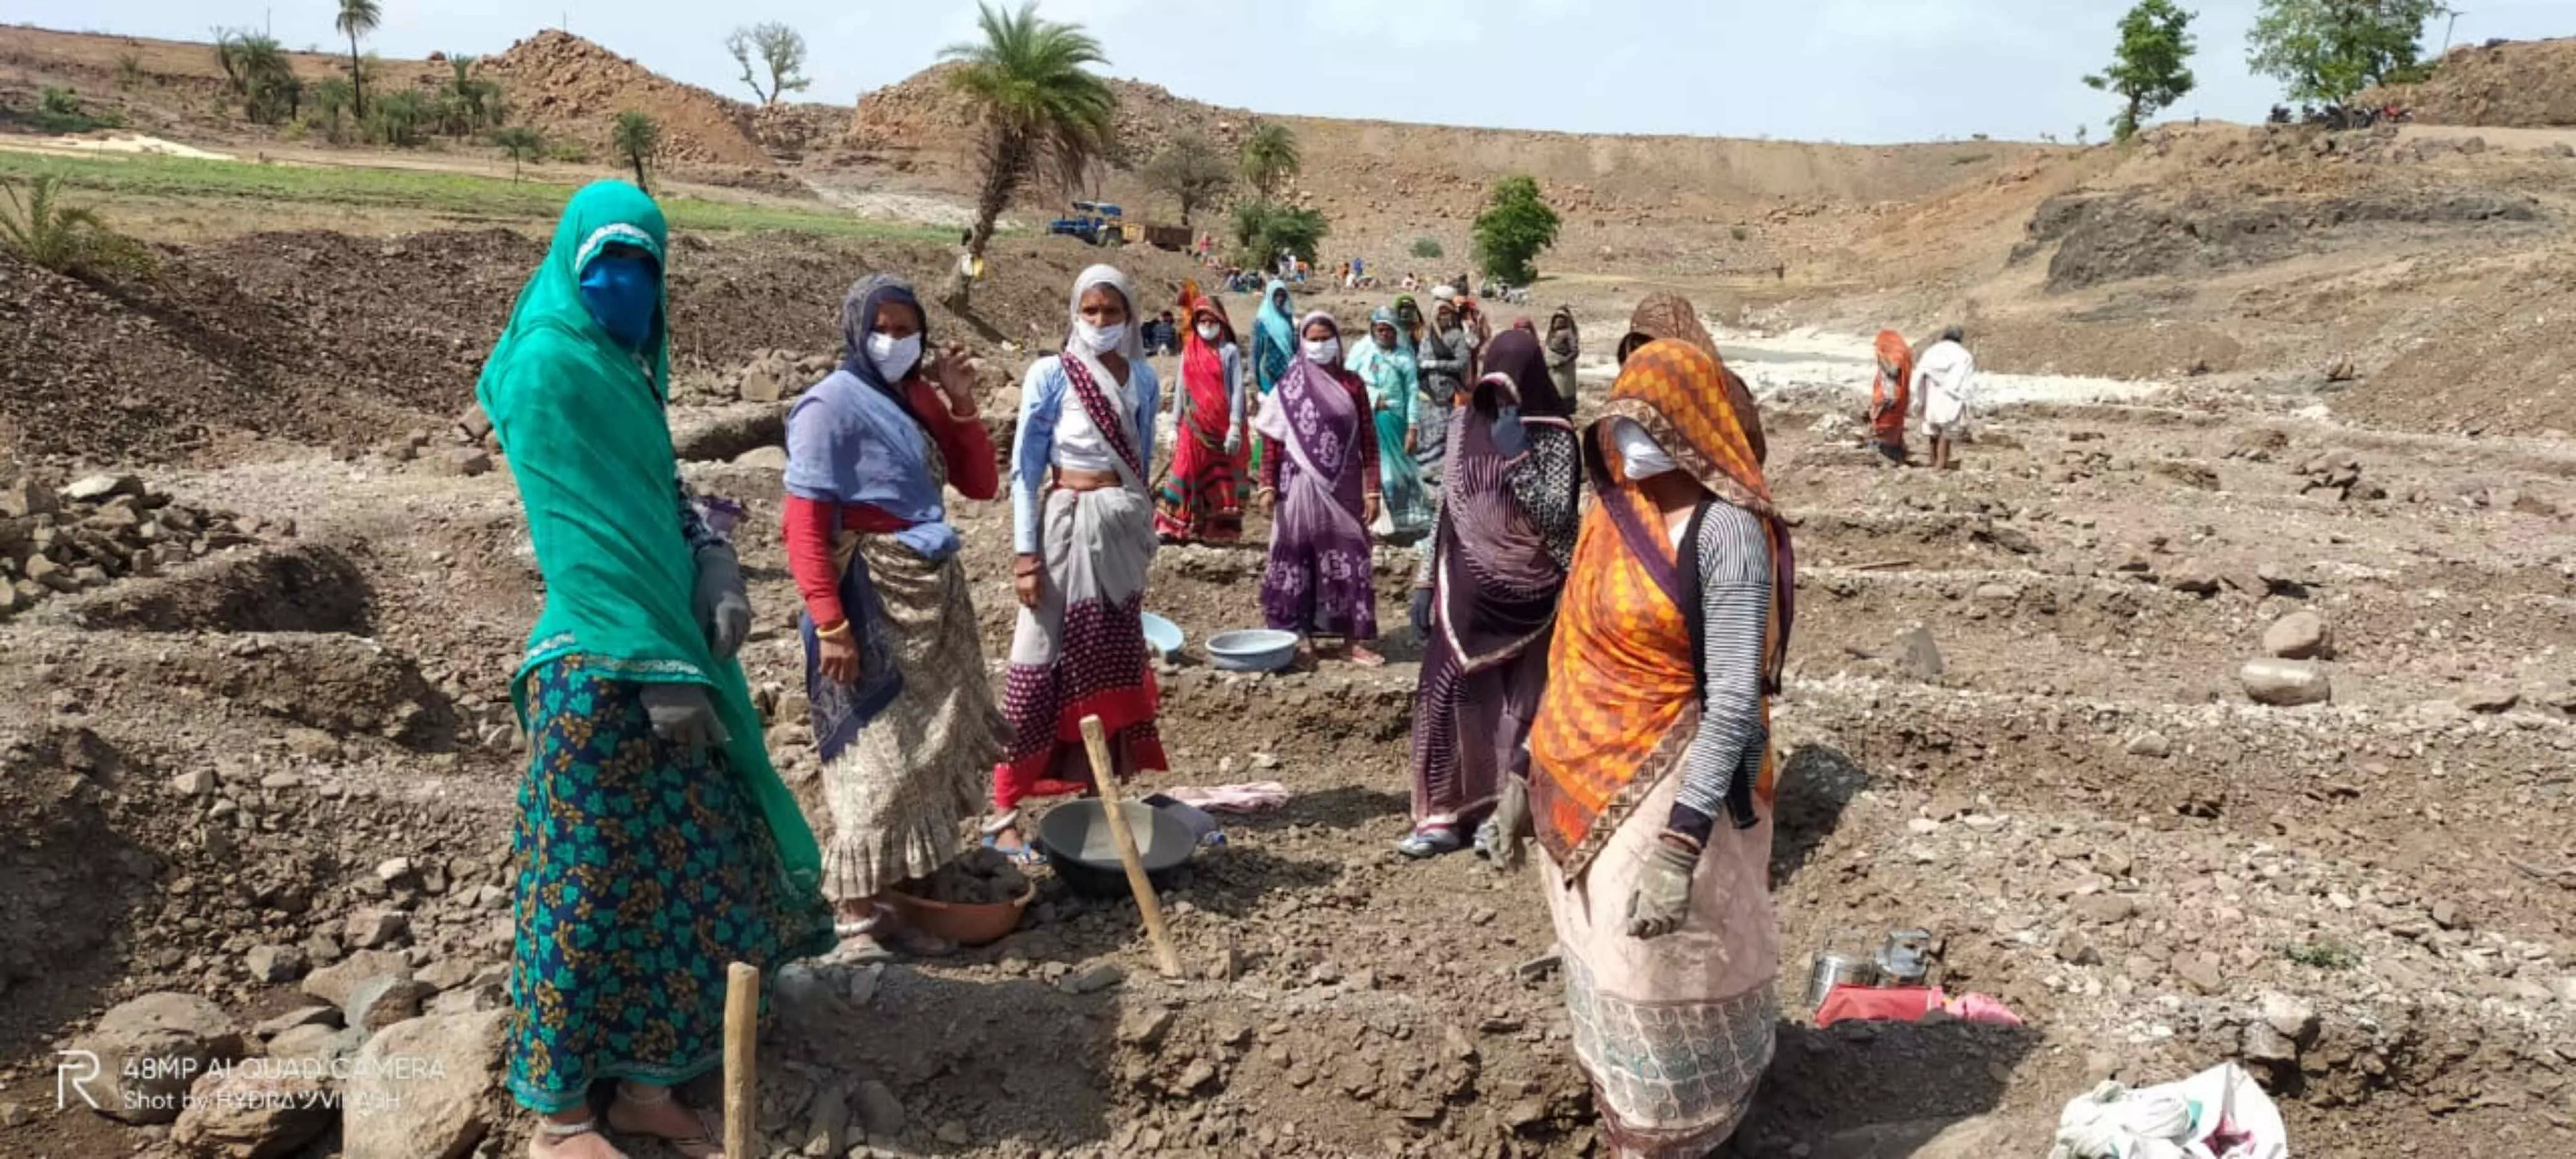 मध्य प्रदेश के आदिवासी जिलों में पलायन से लौटी महिलाओं ने मनरेगा में संभाला काम